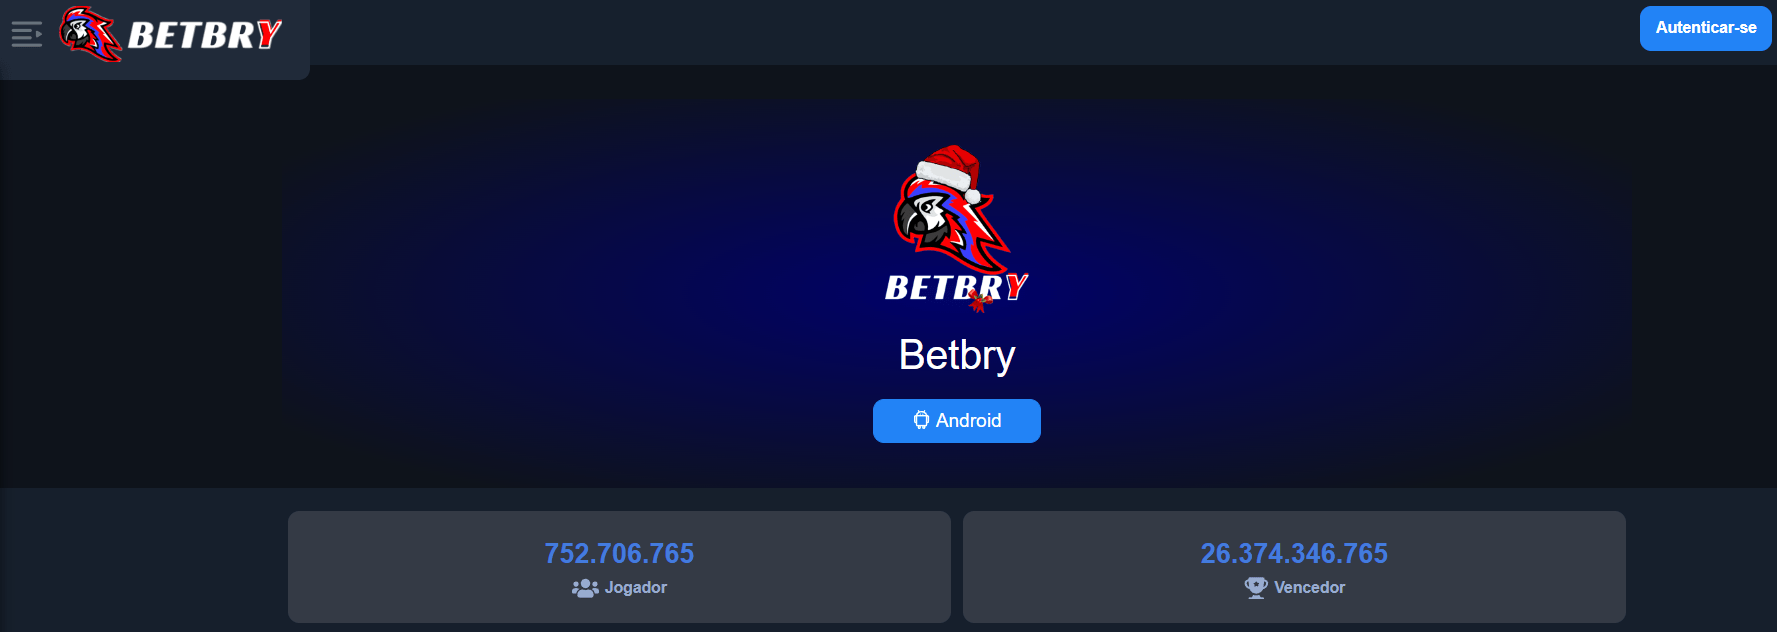 Prévia do aplicativo Betbry